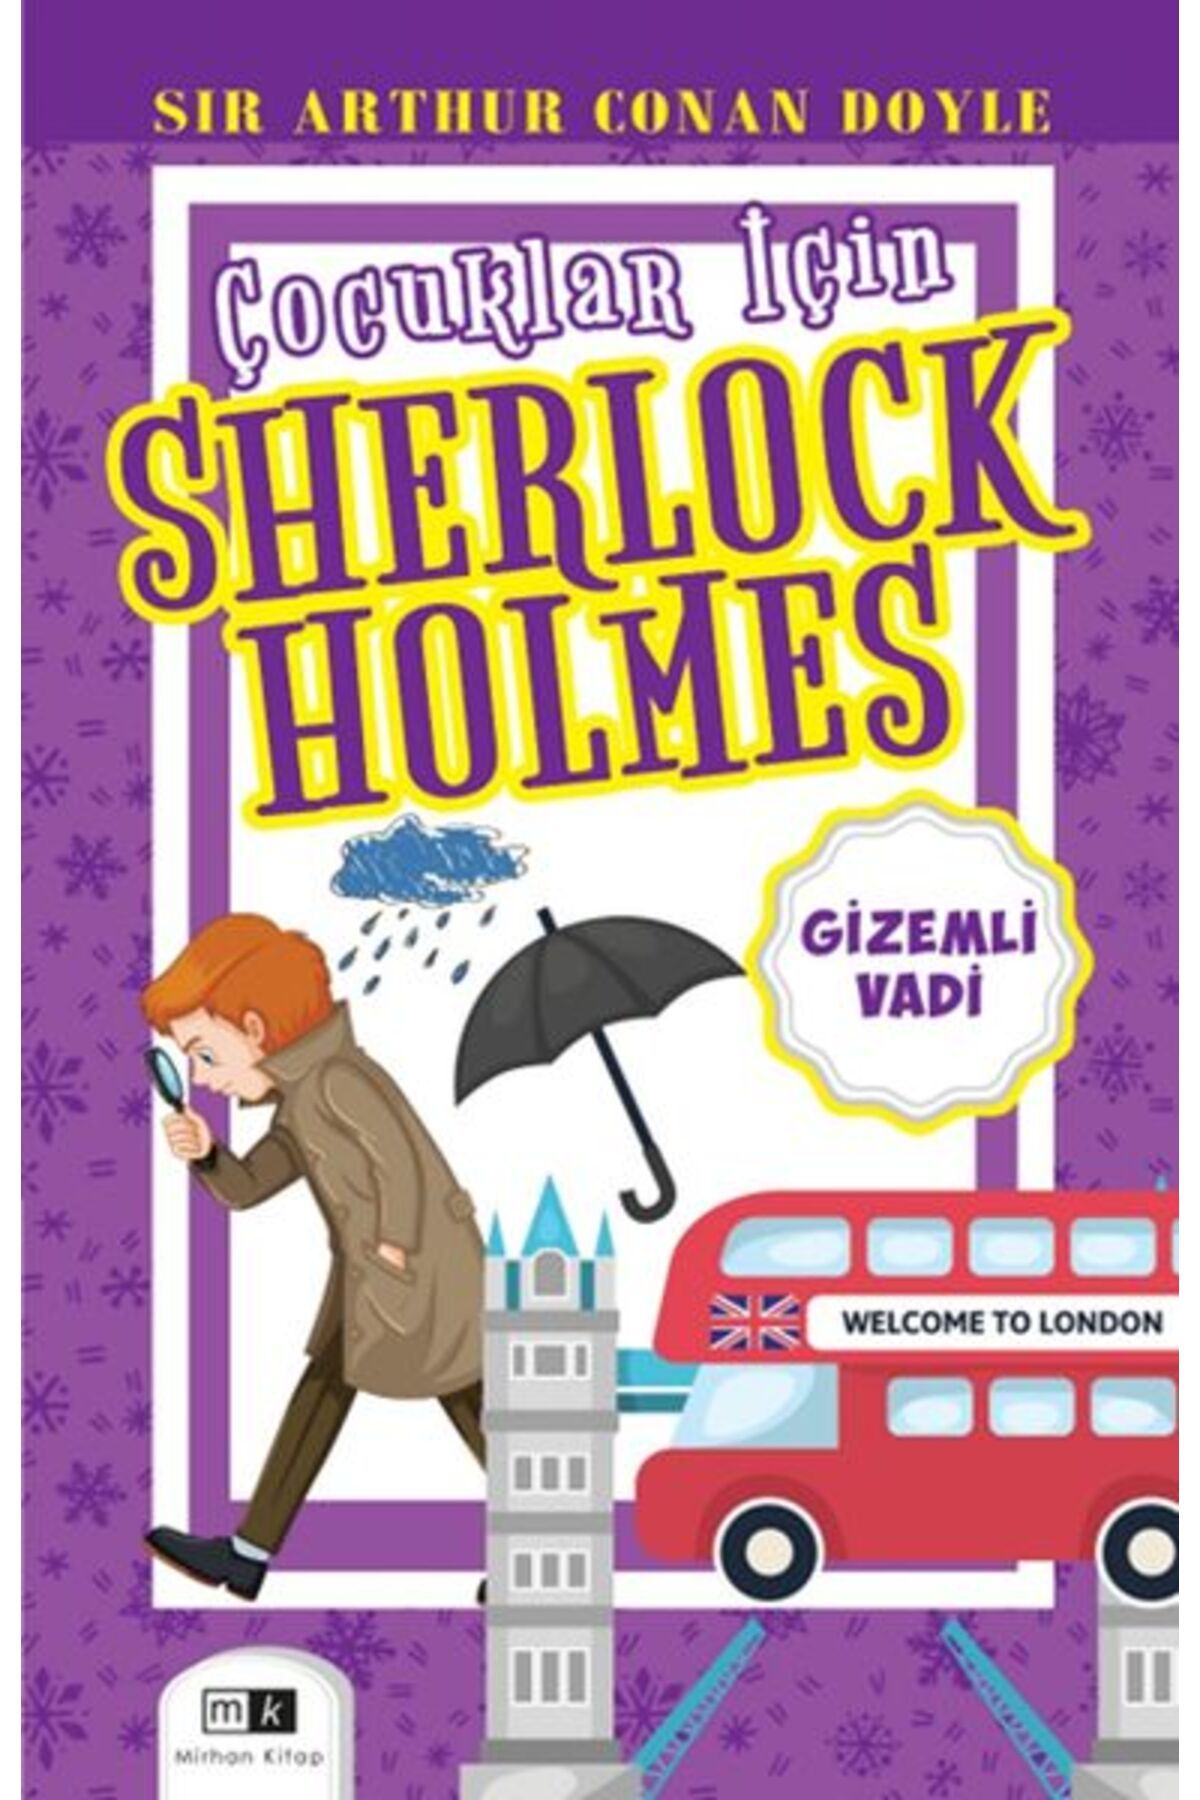 Mirhan Kitap Çocuklar İçin Sherlock Holmes - Gizemli Vadi Mirhan Kitap (Korunaklı Poşetle)